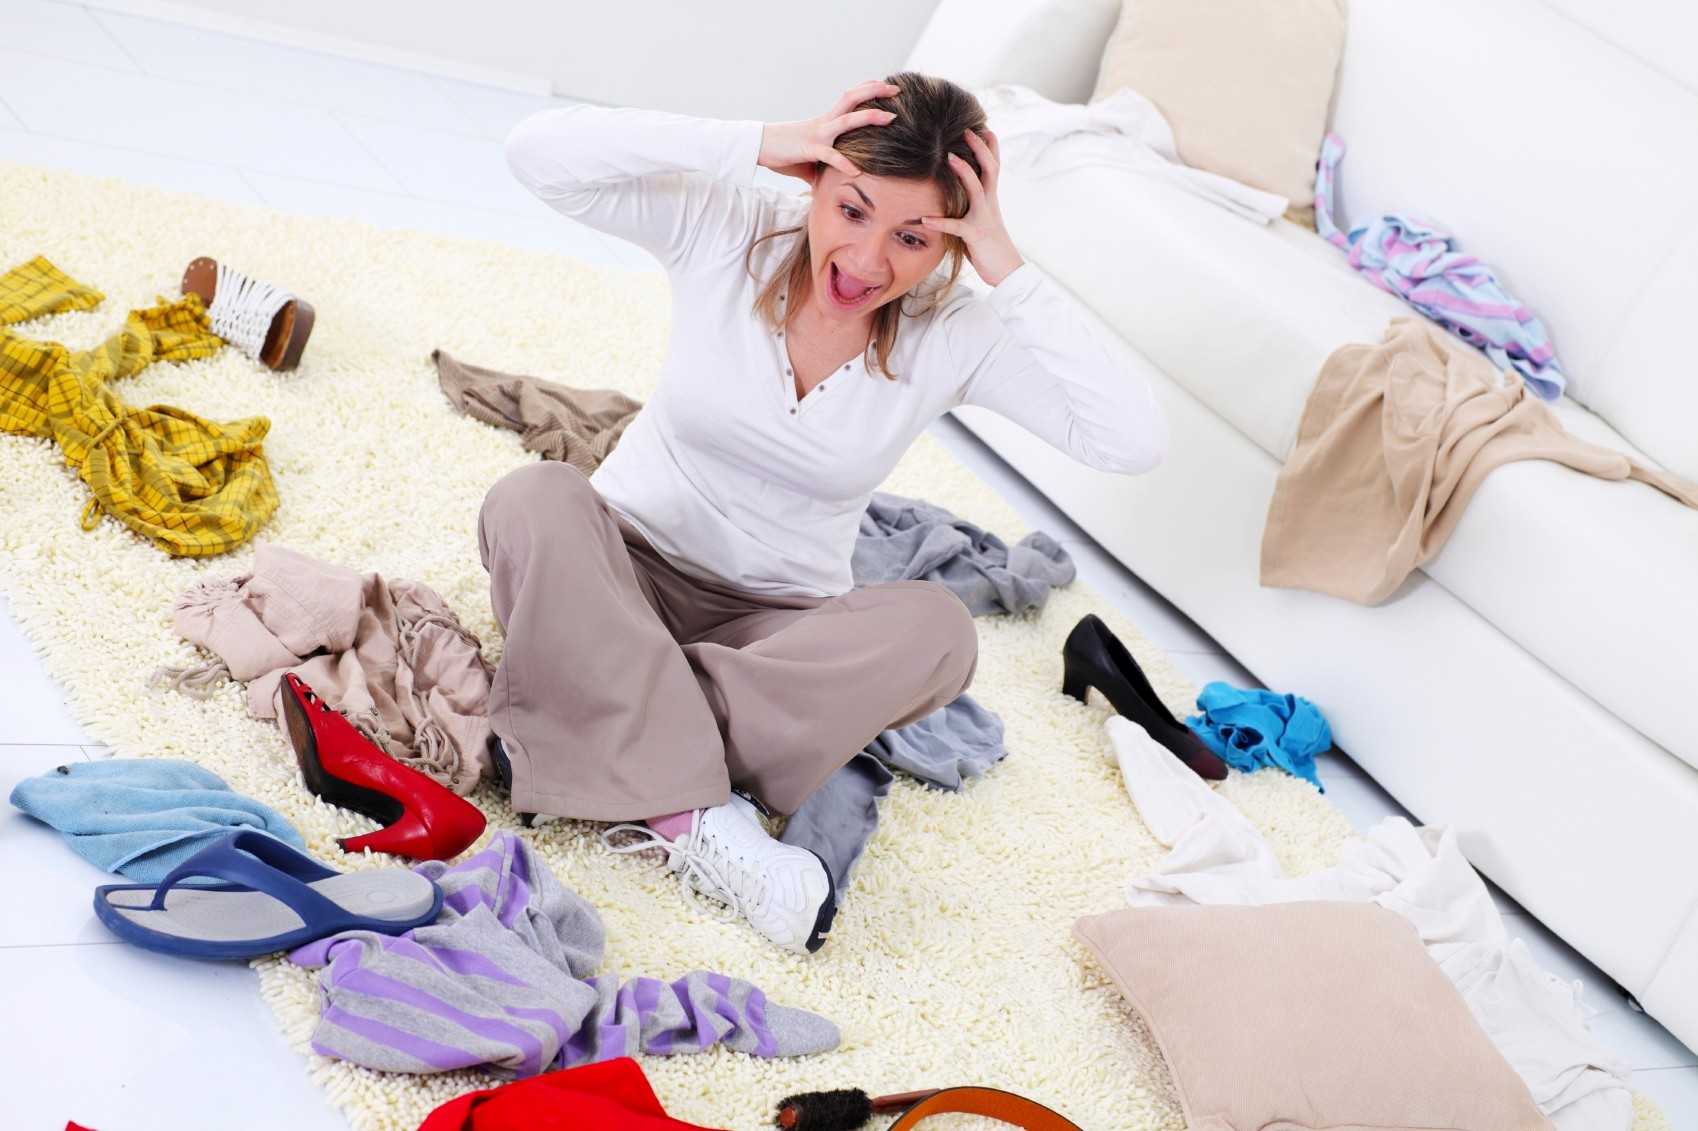 Порядок в доме: как быстро навести порядок в доме, квартире. как заставить себя убираться и с чего начинать уборку